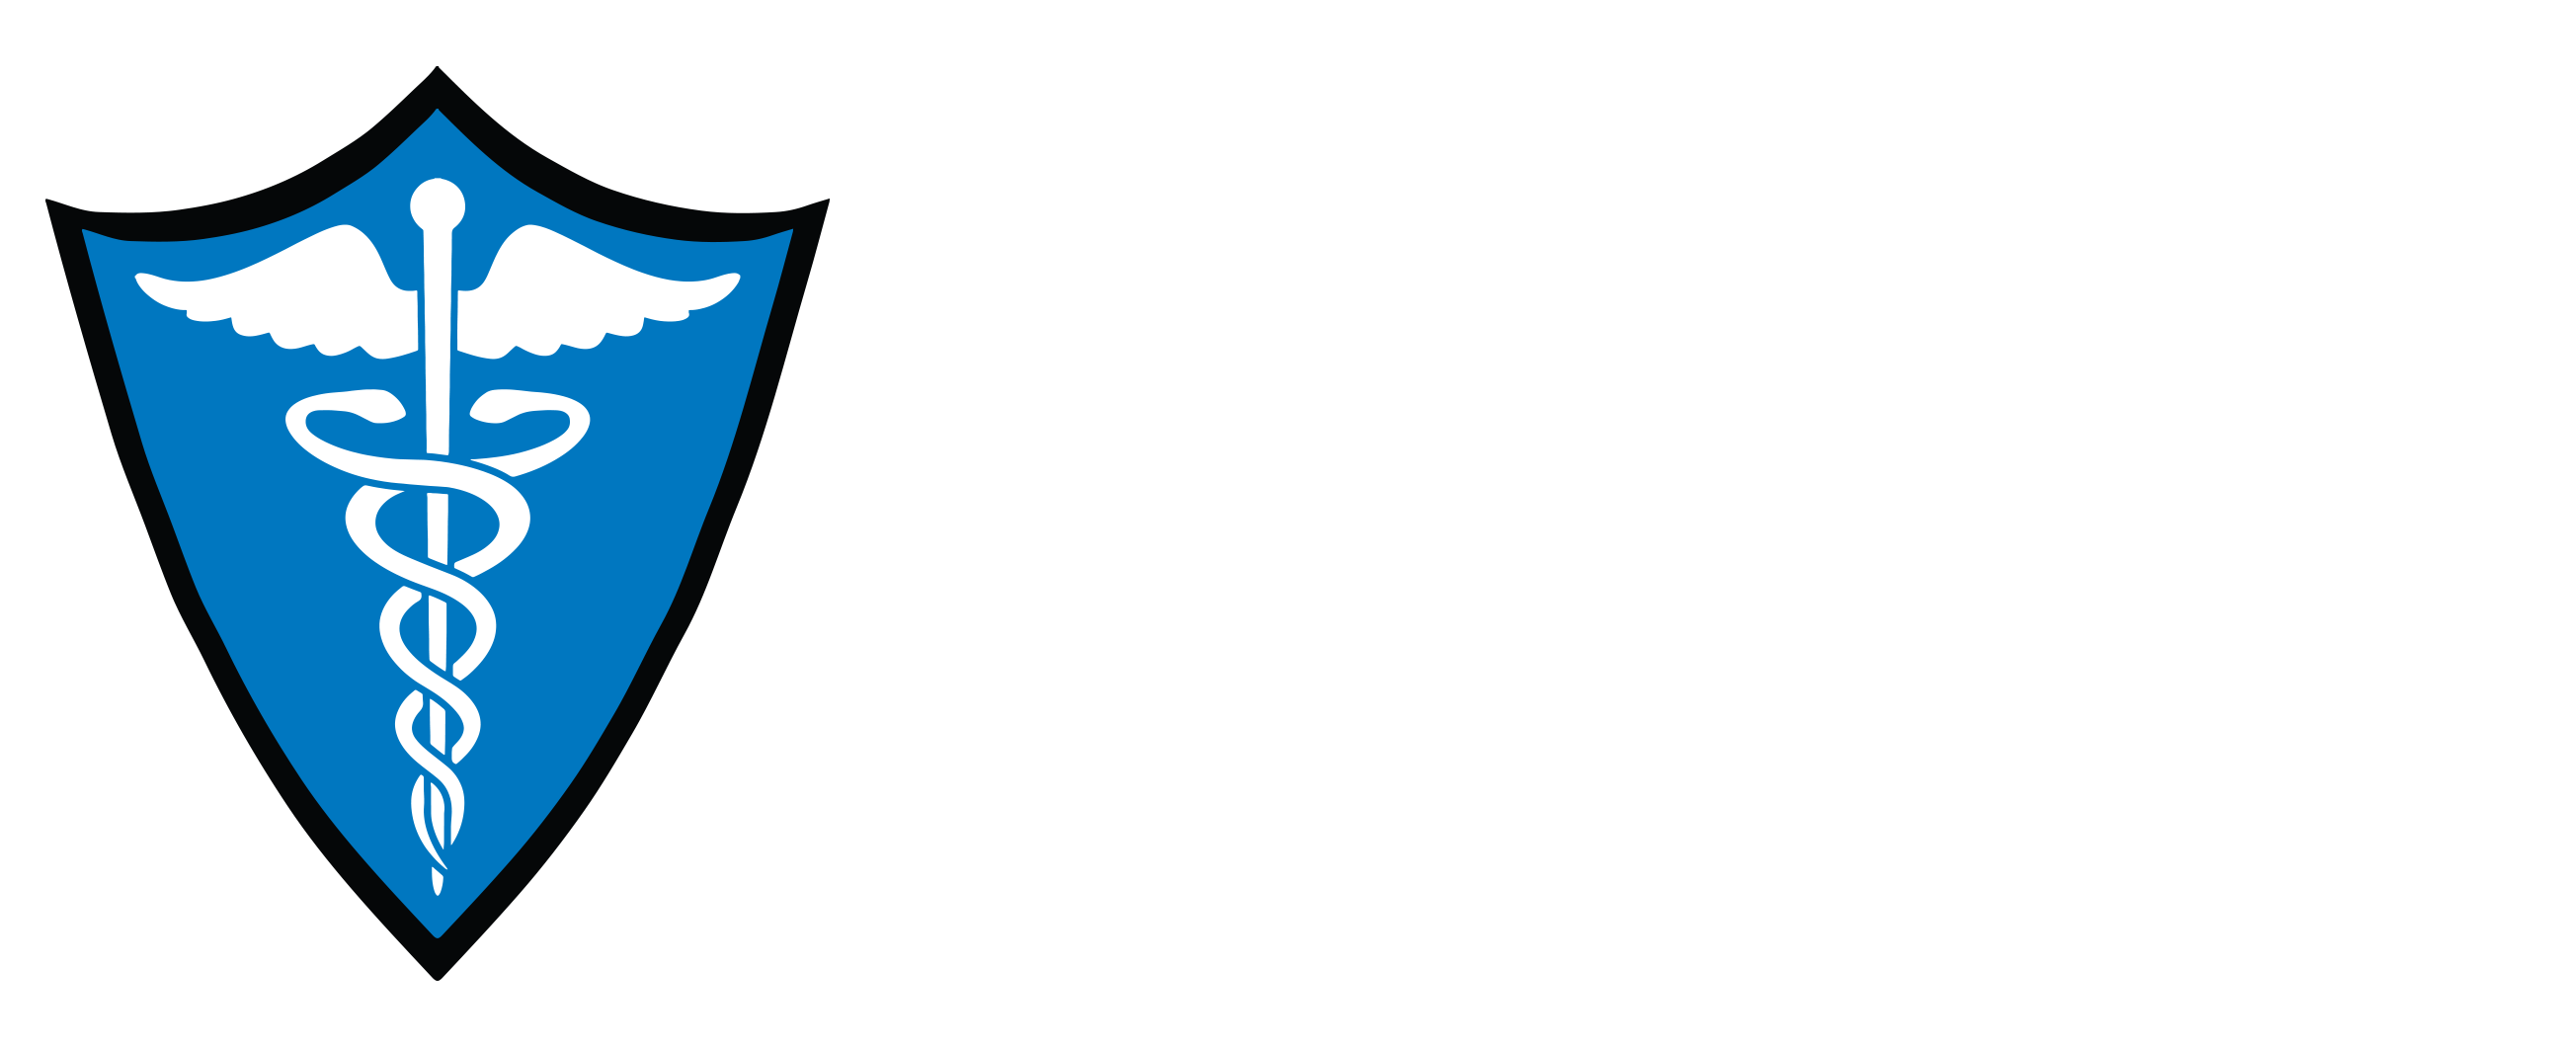 HIPAA compliance